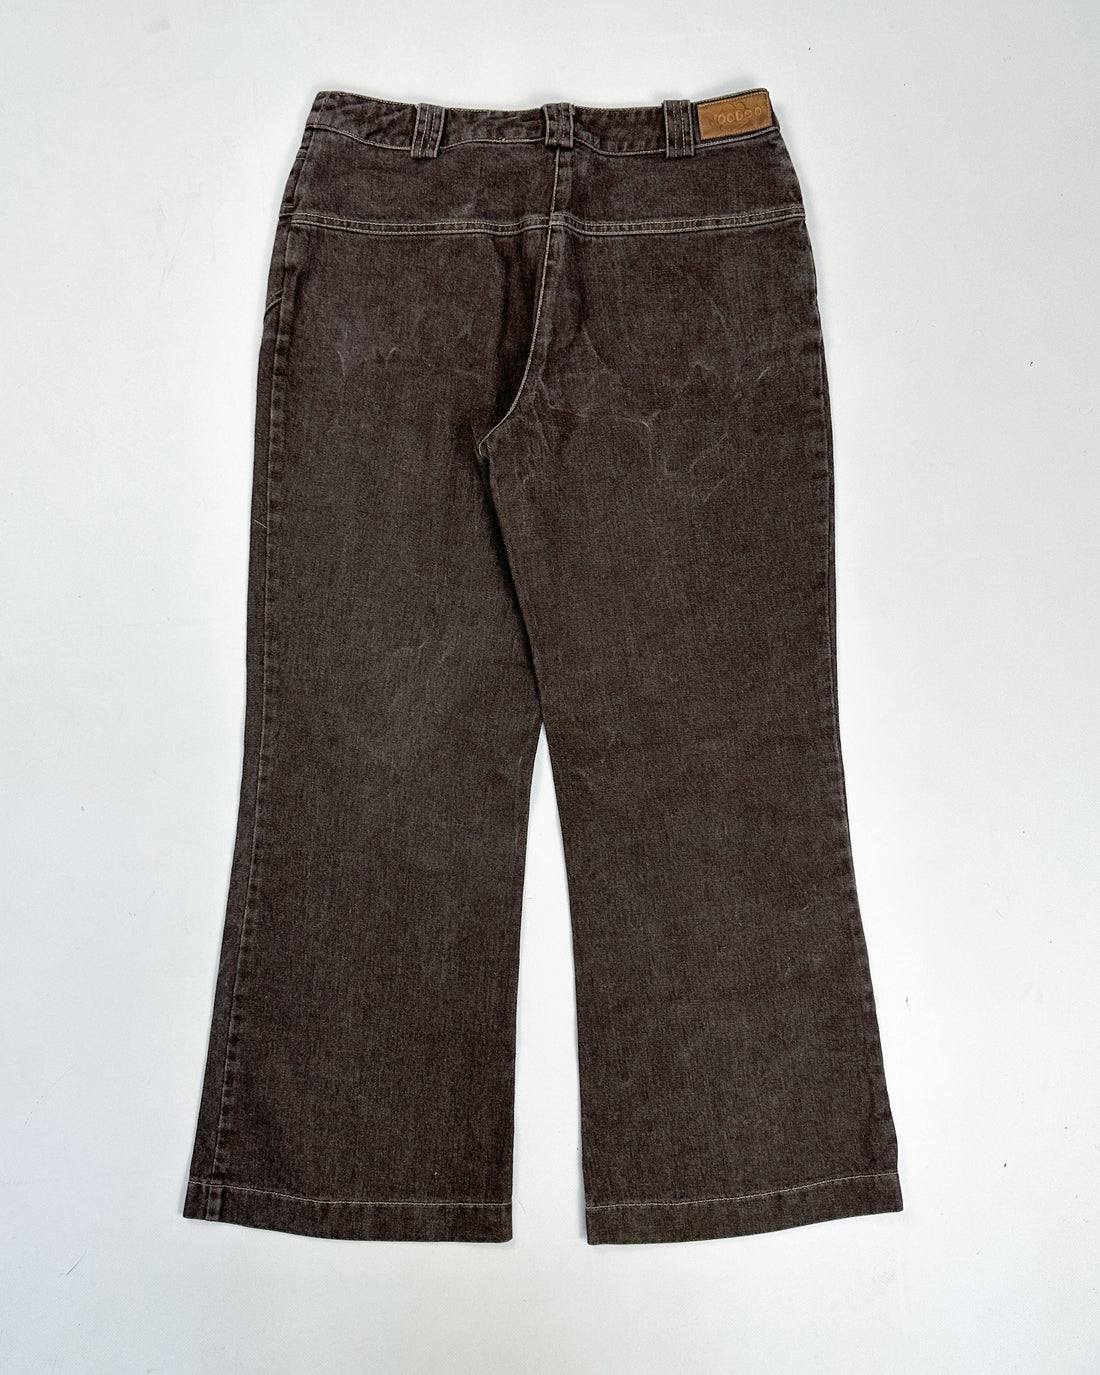 Voodoo Brown Simple Pants 1990's